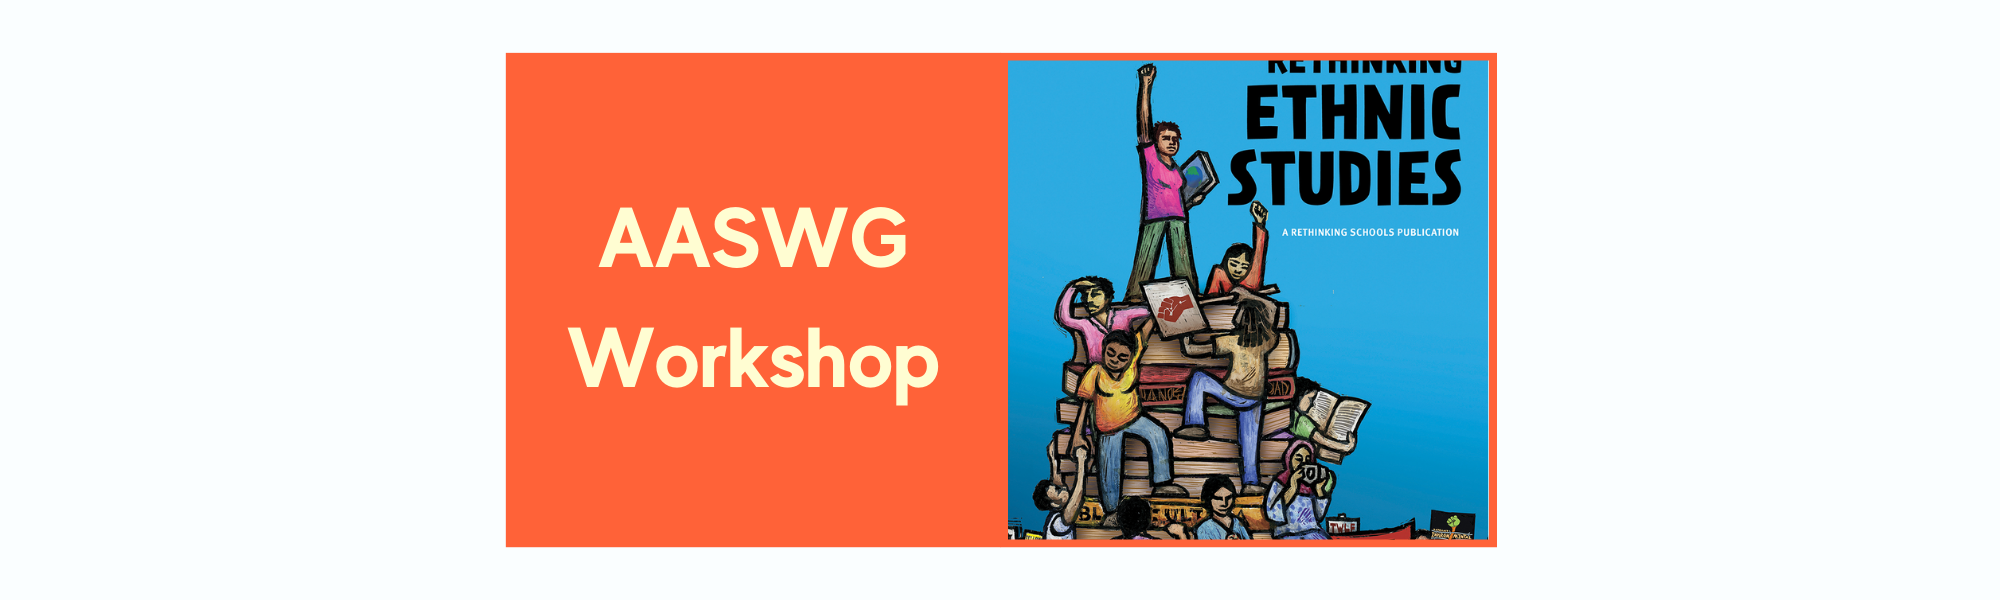 AASWG-Workshop.png